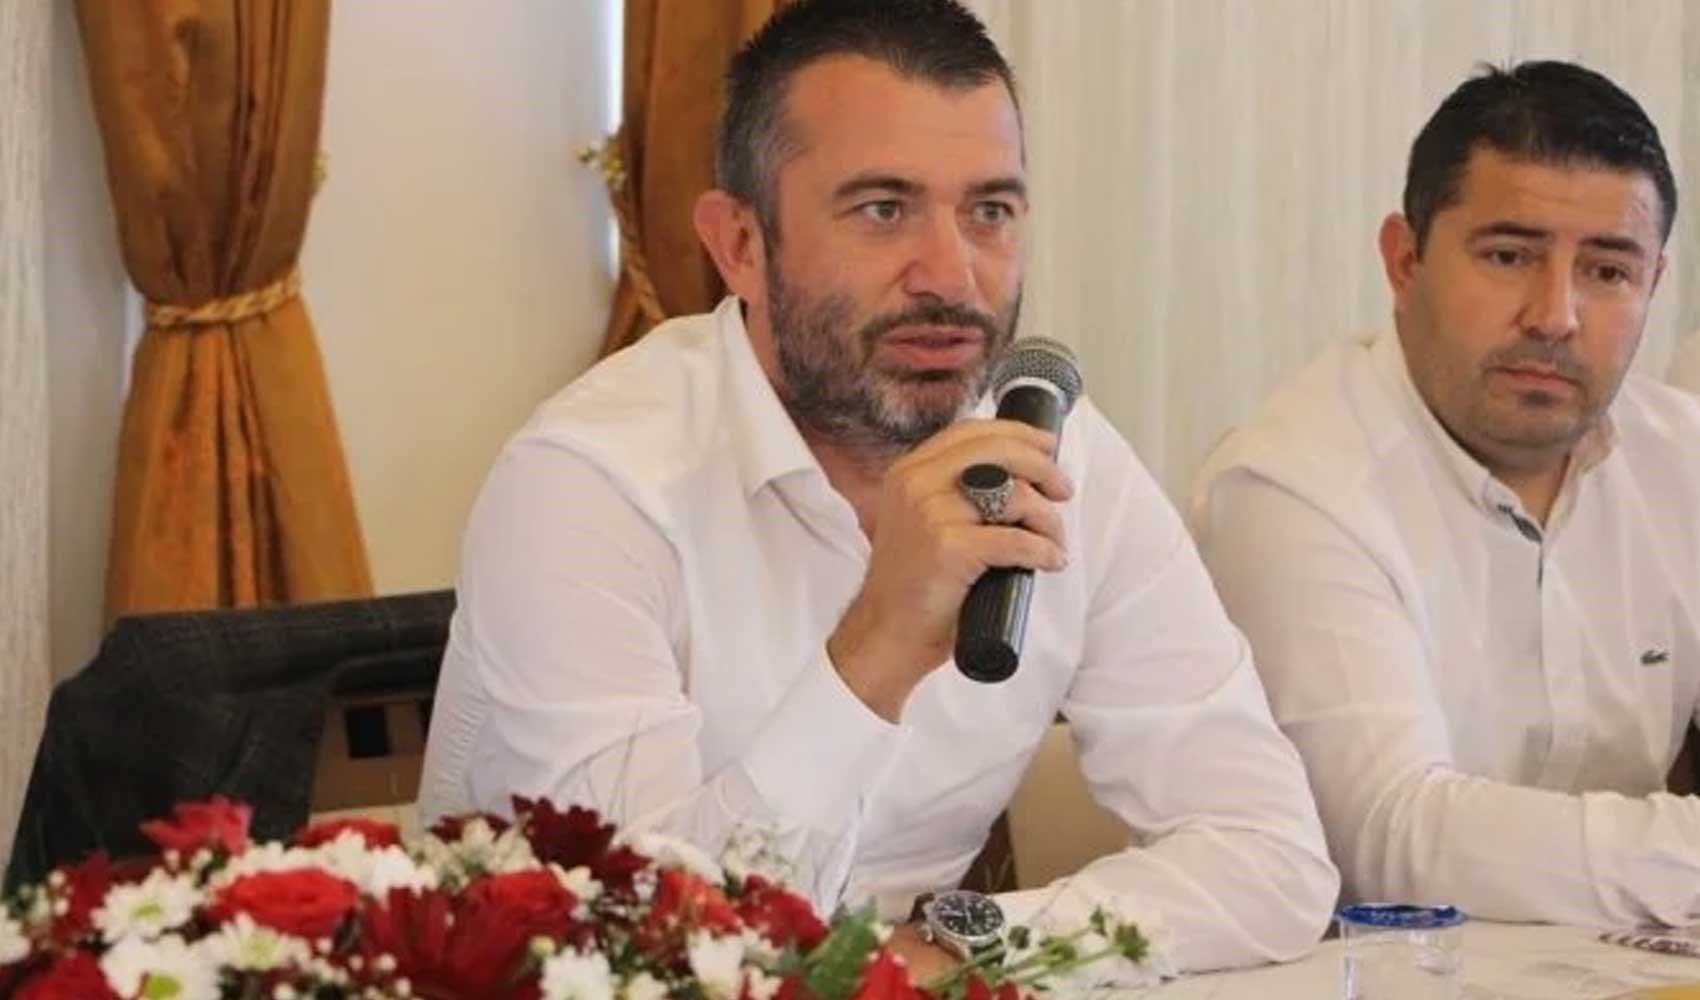 Bandırmaspor'da başkan Onur Göçmez görevini bıraktı